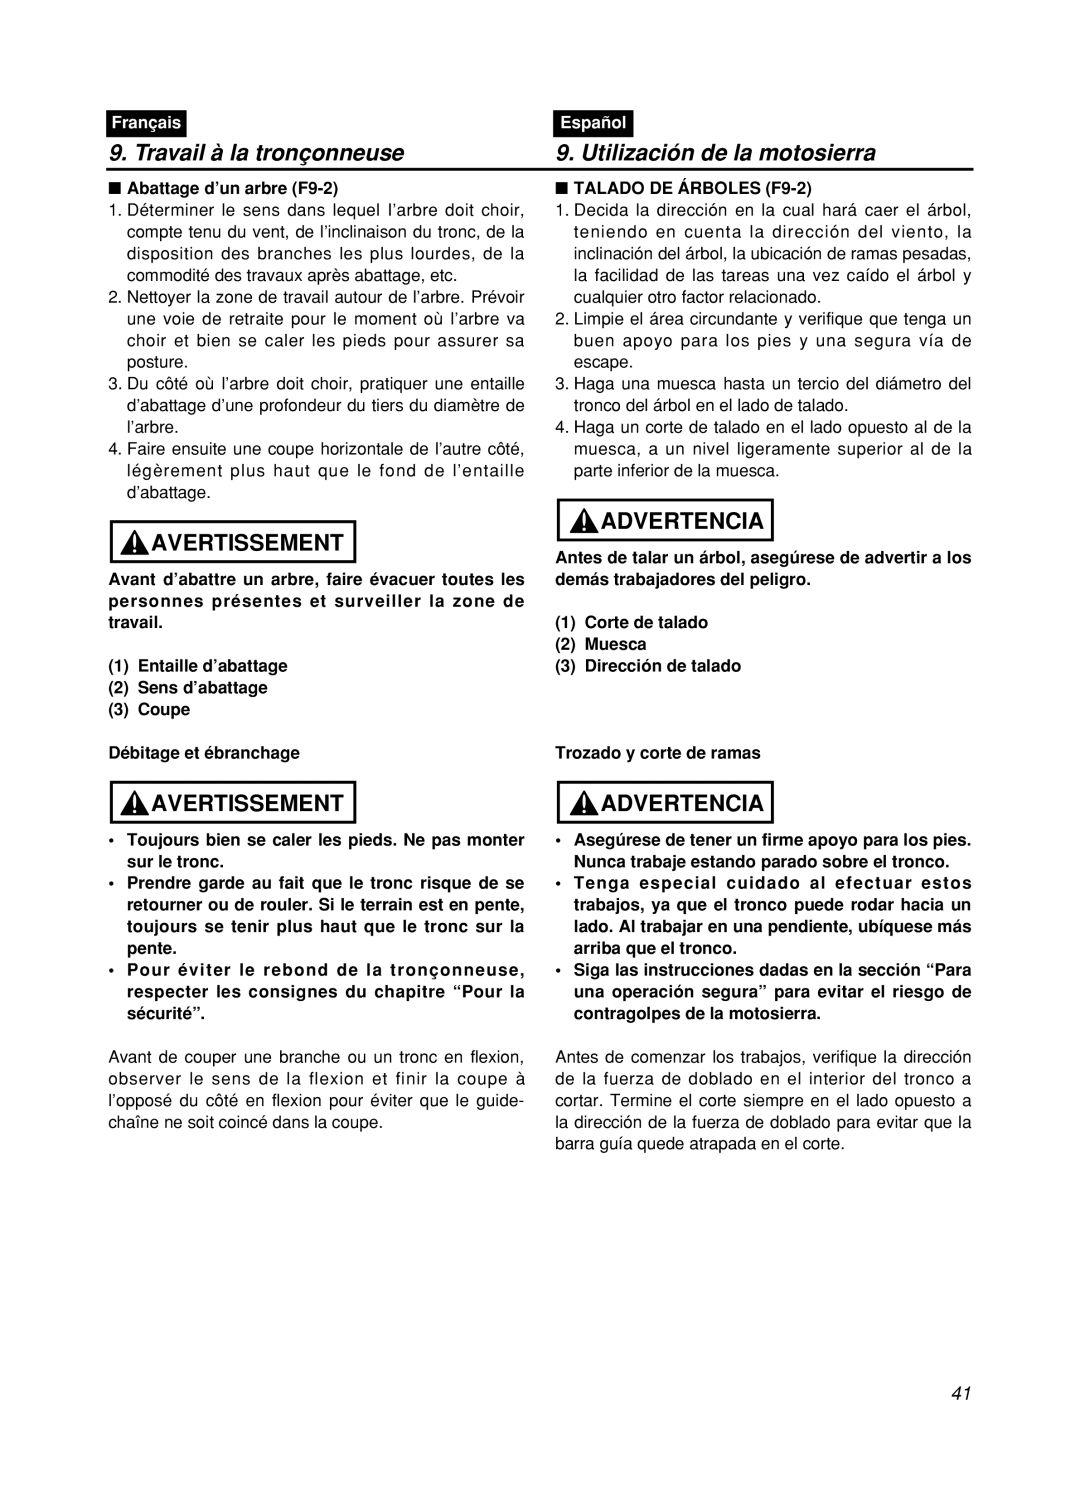 Zenoah GZ400 manual Travail à la tronçonneuse, Utilización de la motosierra, Avertissement, Advertencia, Français, Español 